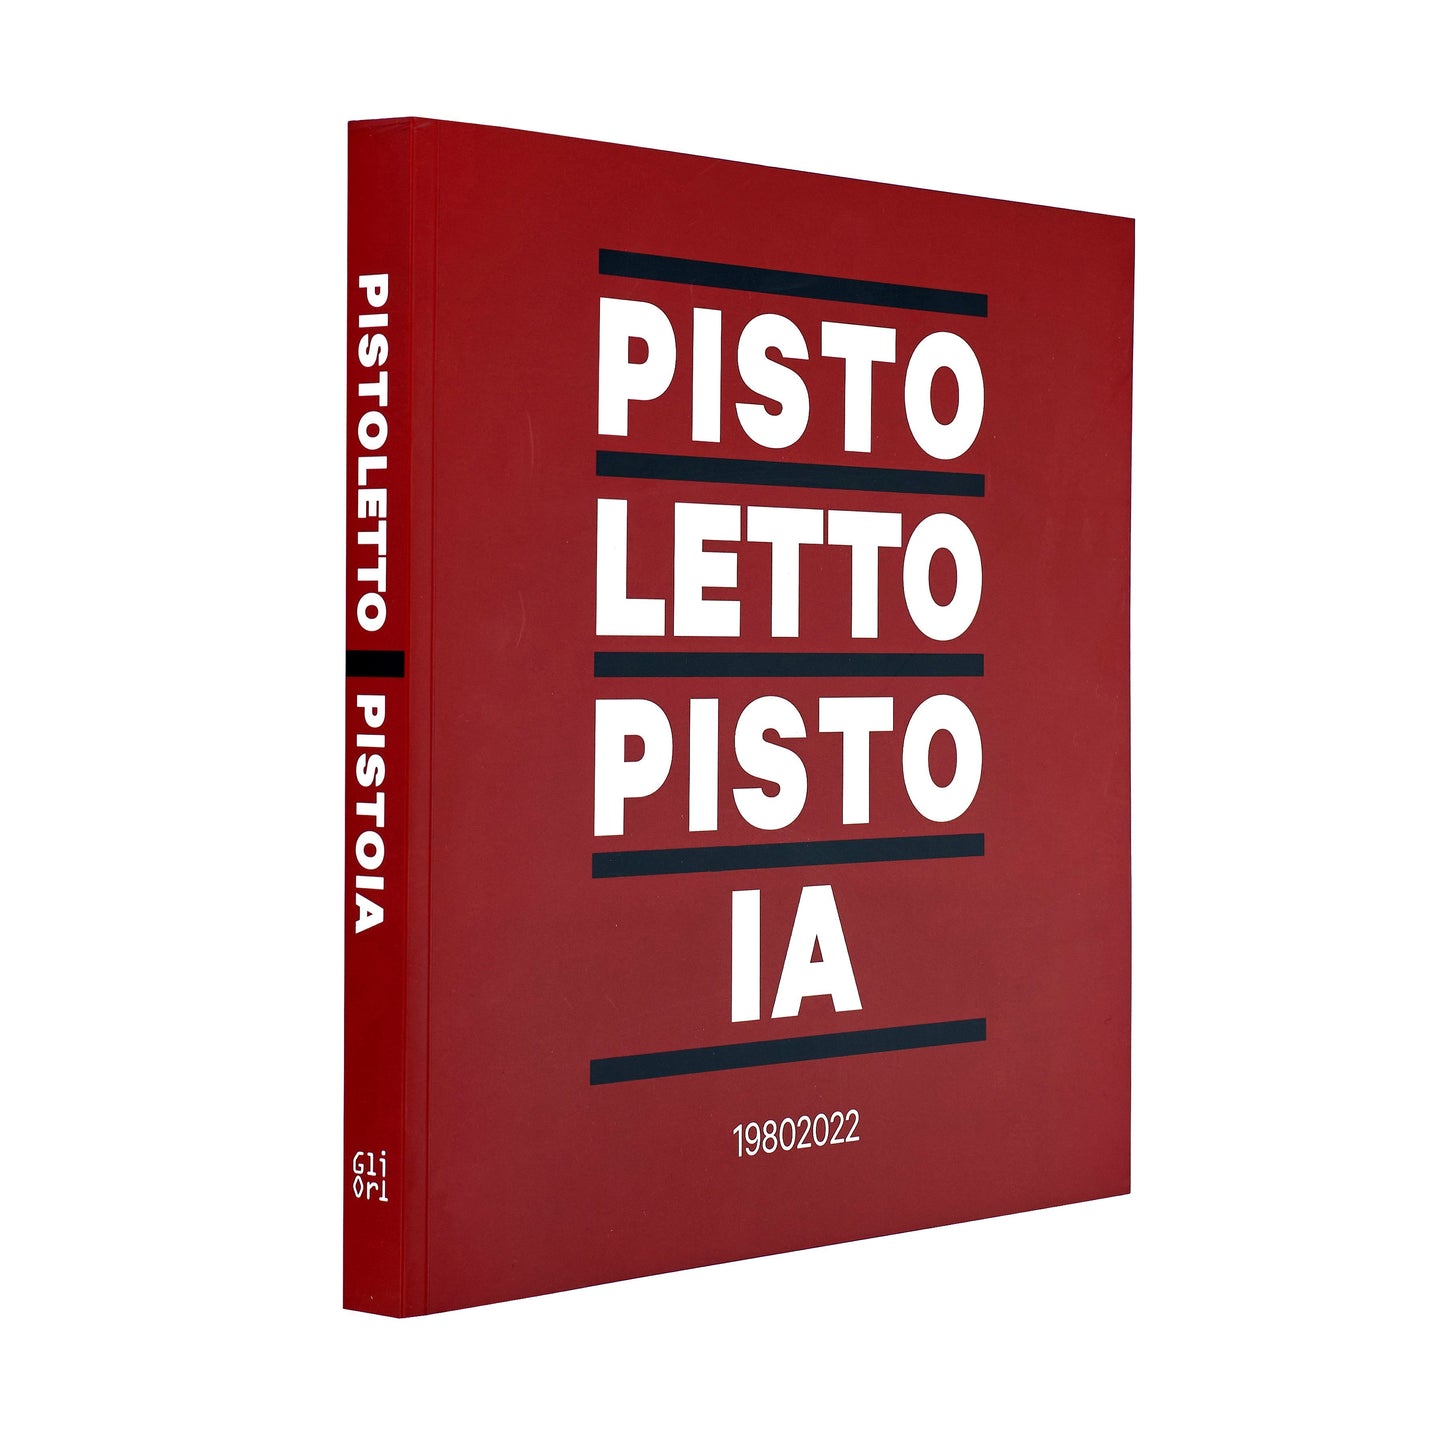 Pistoletto Pistoia 19802022 (catalogo mostra)